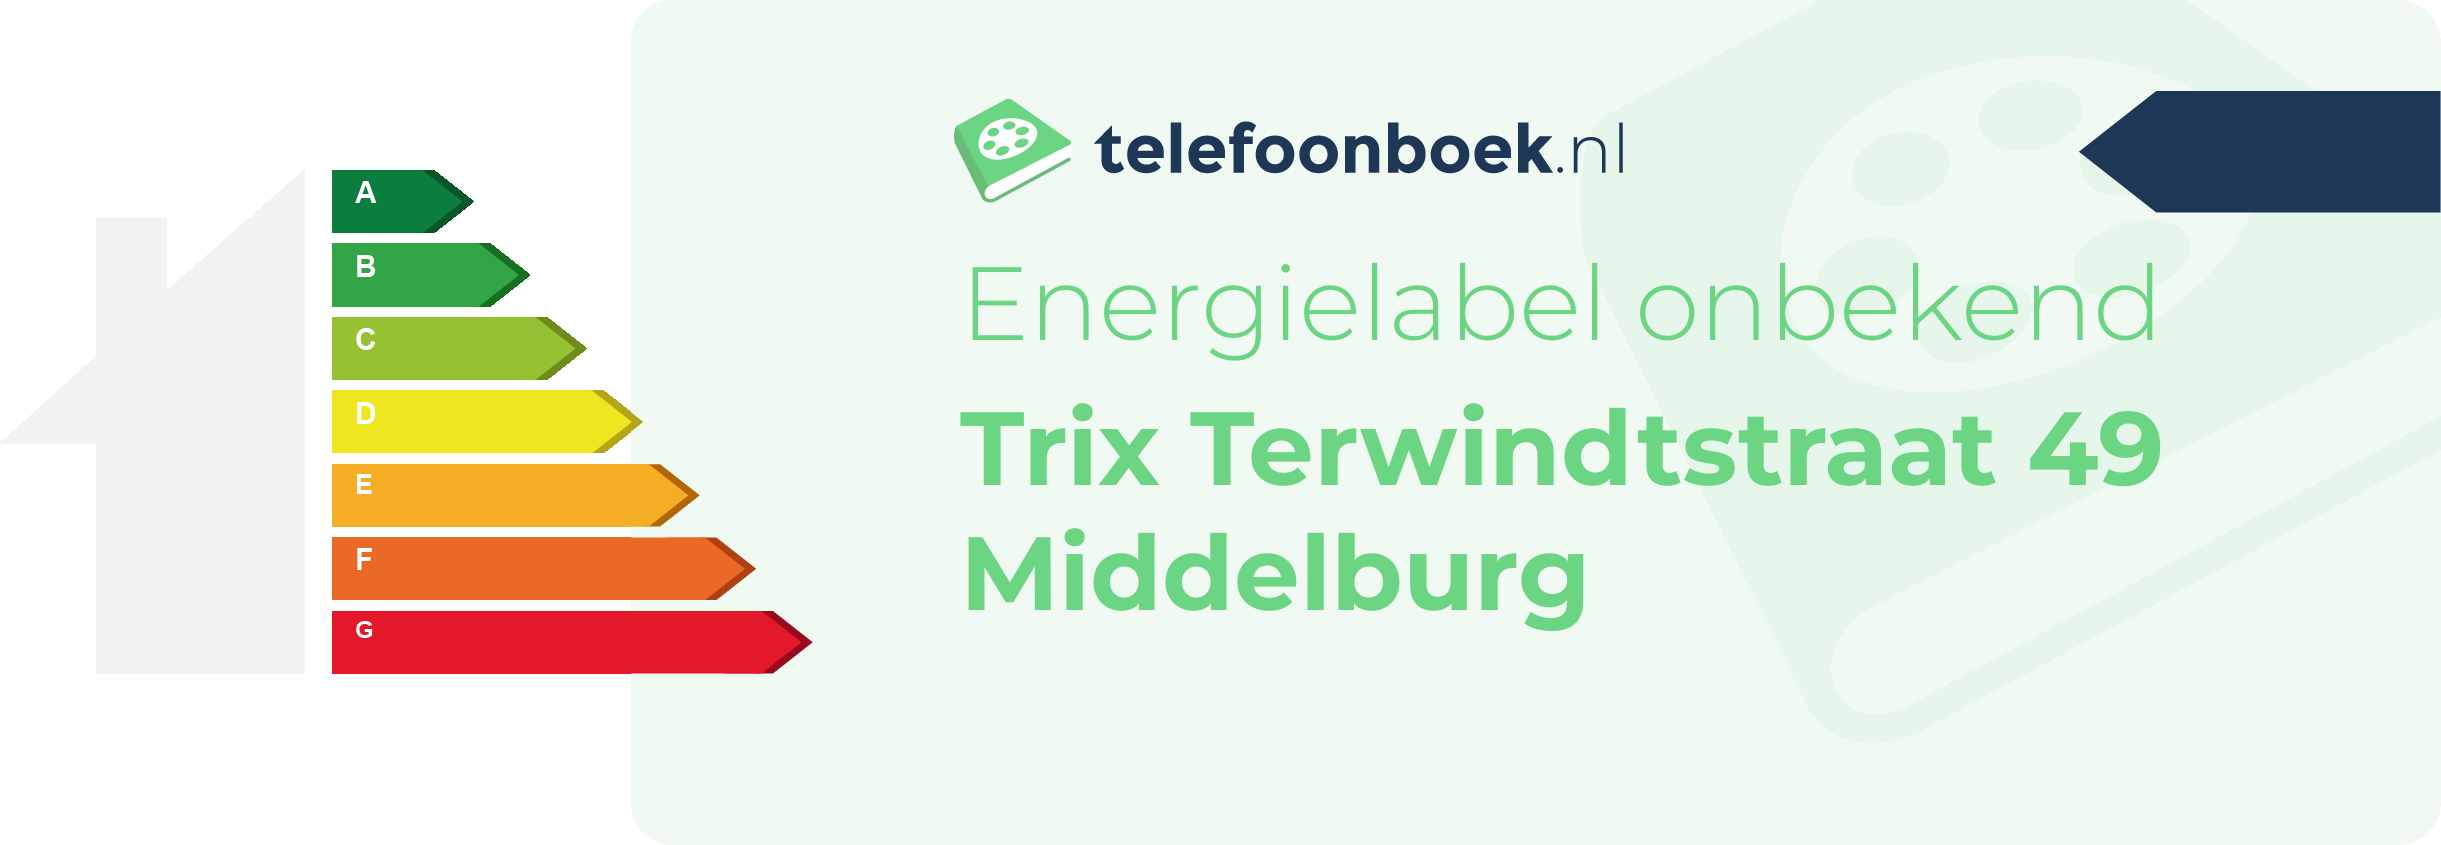 Energielabel Trix Terwindtstraat 49 Middelburg